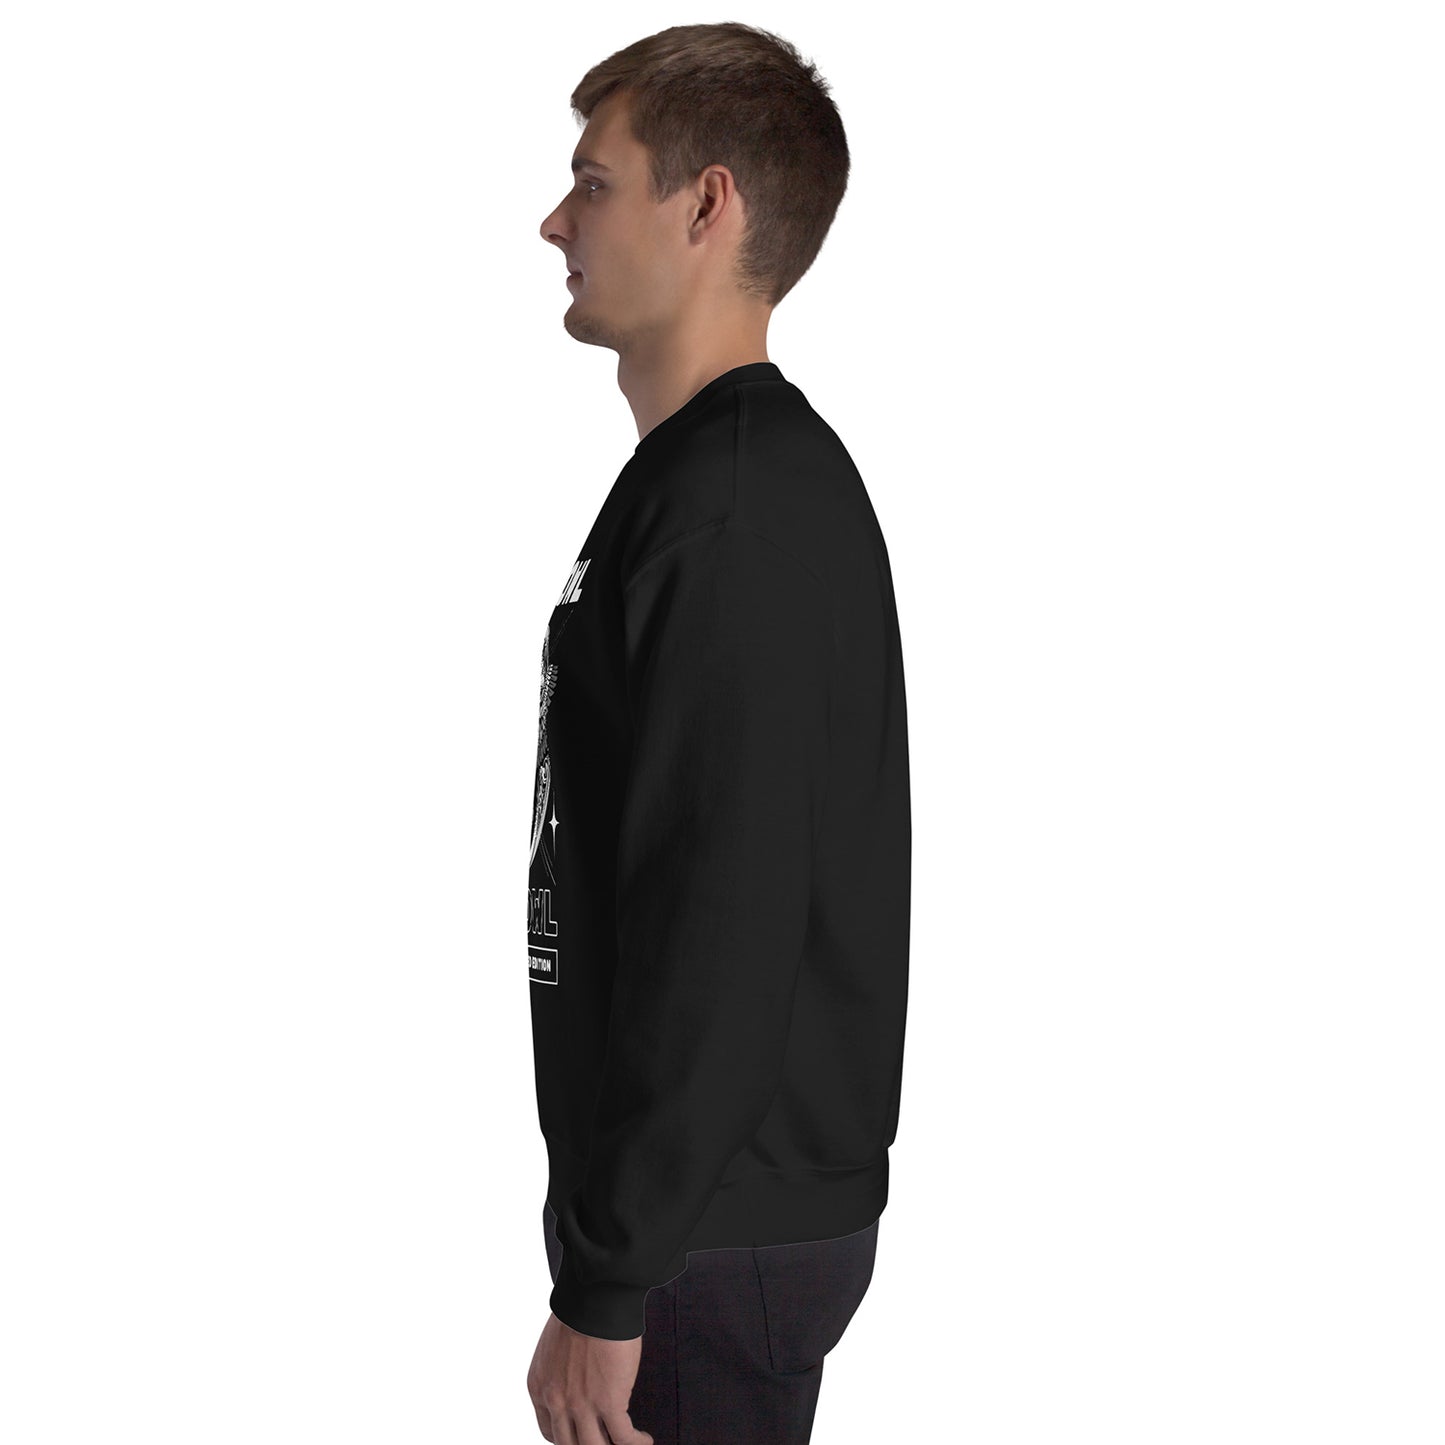 Men's Sweatshirt Unique Fit Design sweatshirt